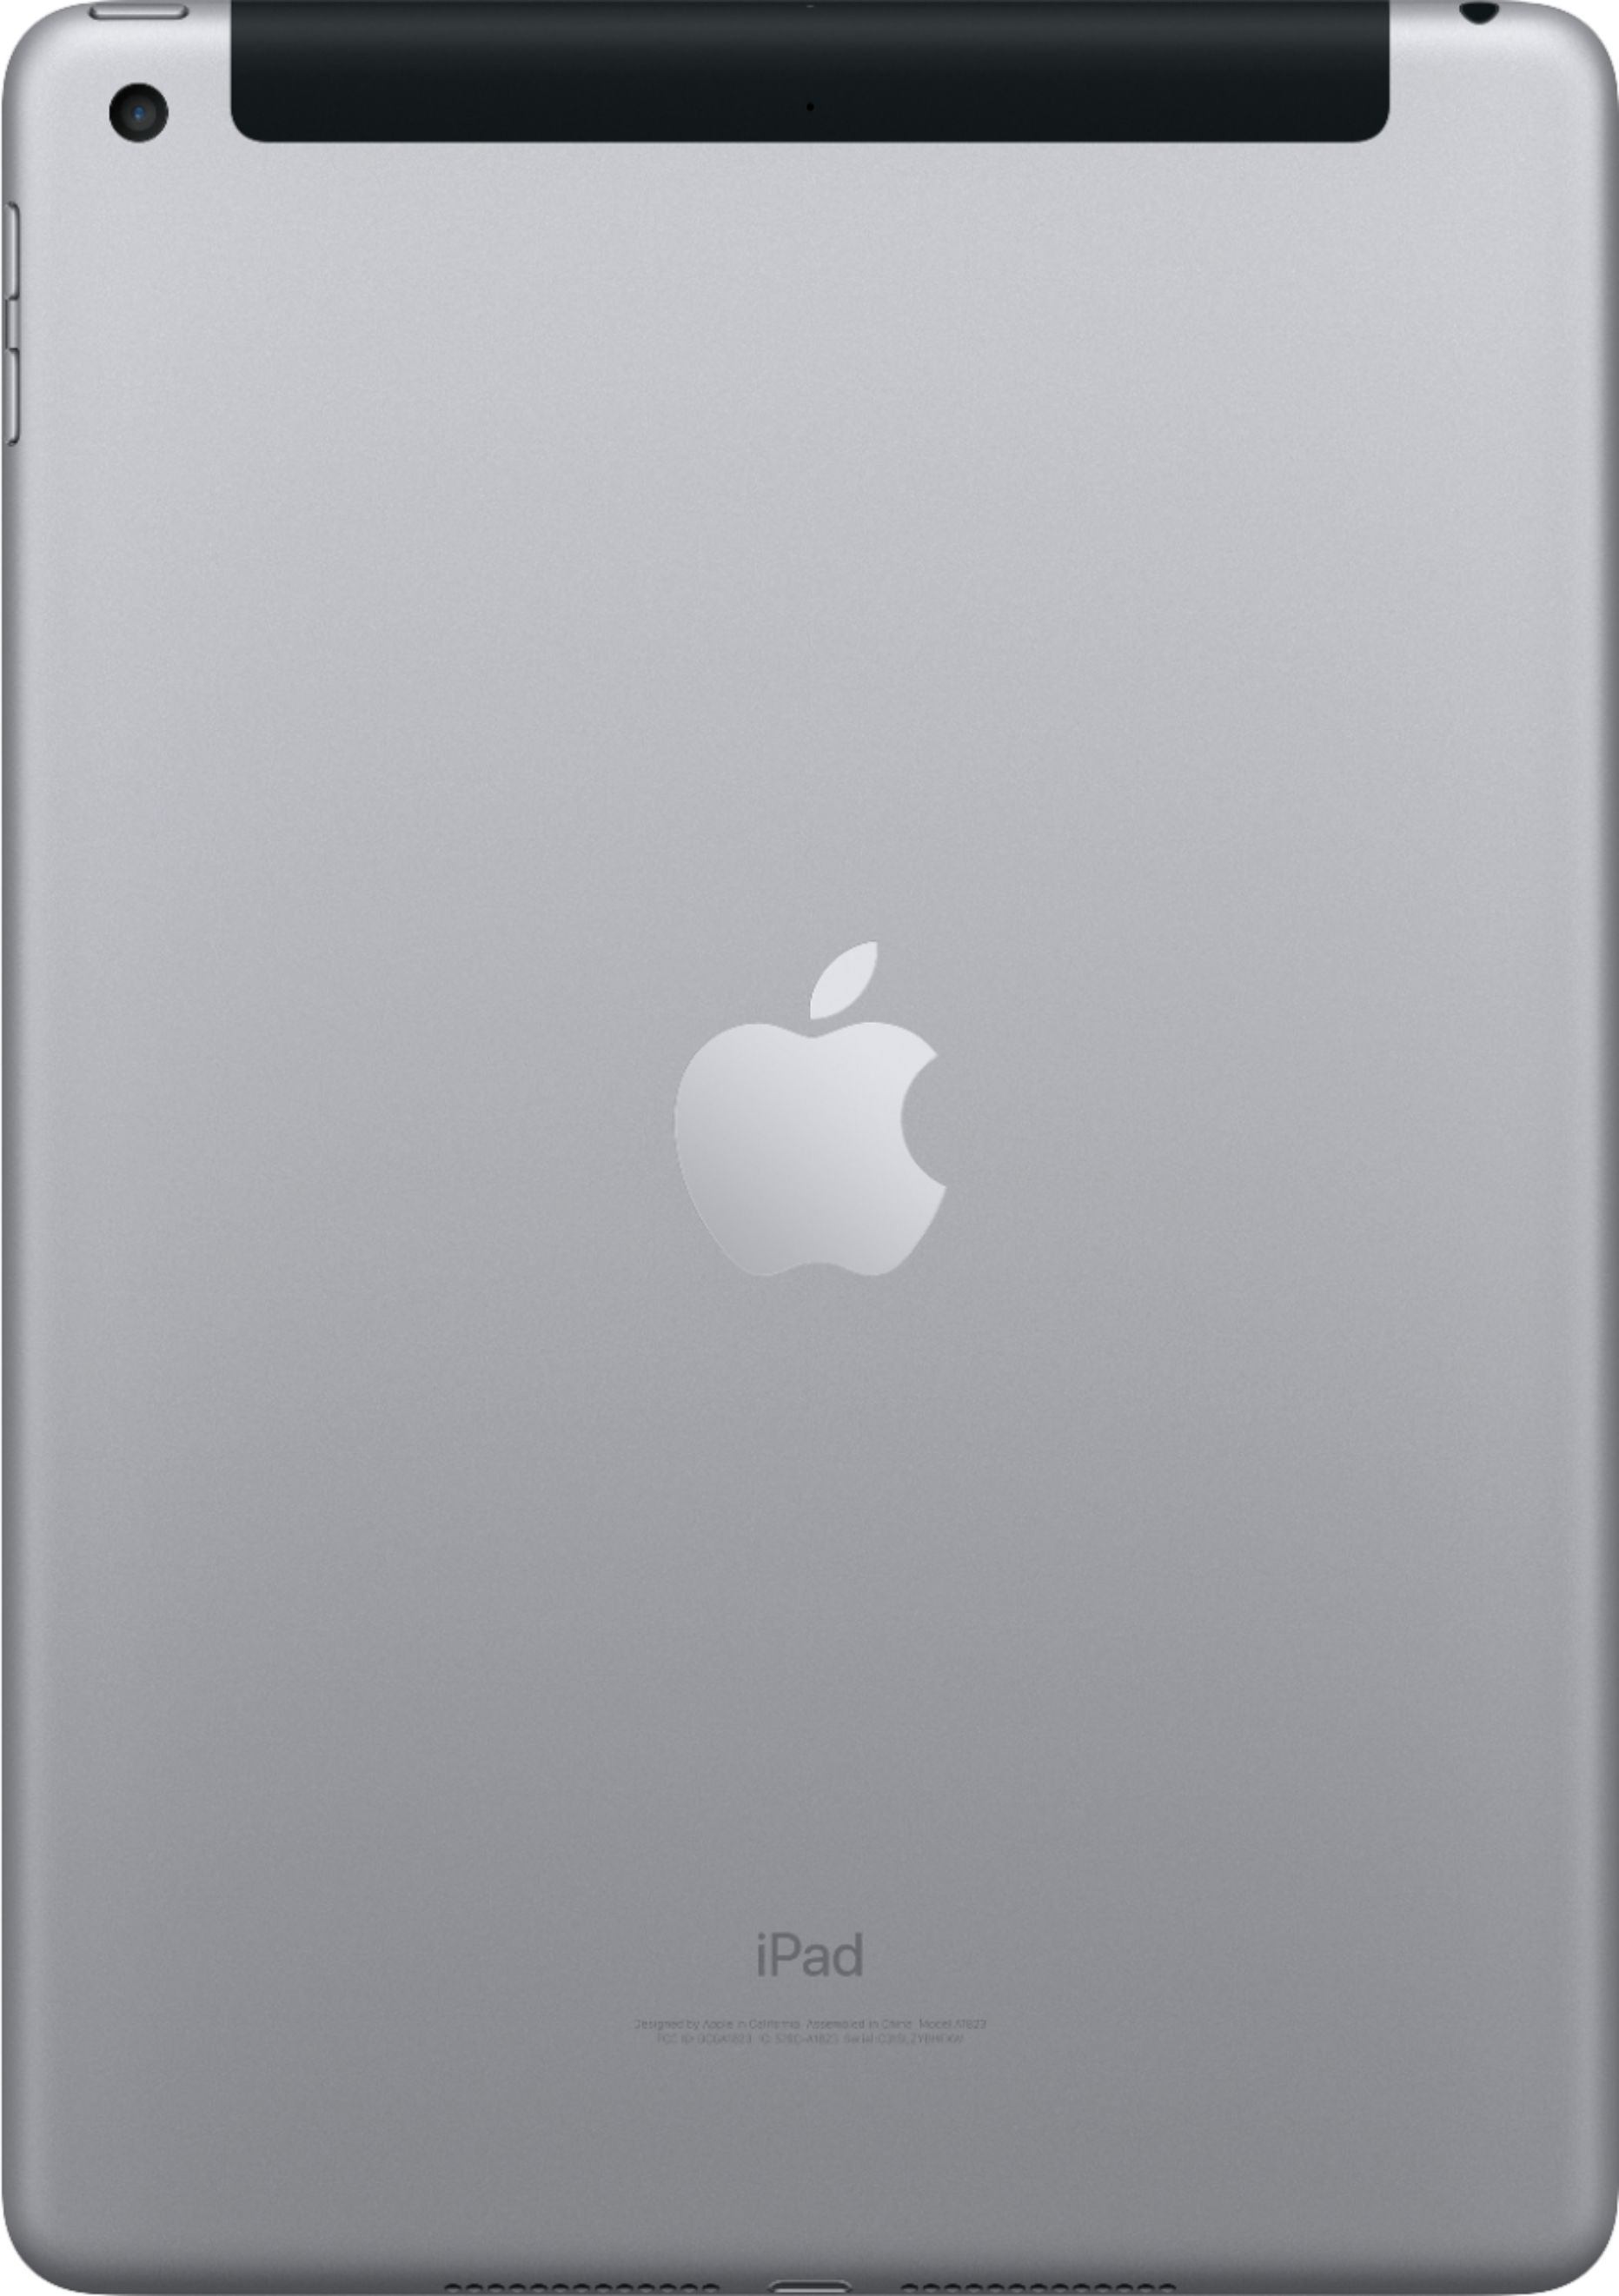 iPad 6ta Generación Apple space gray reacondicionado